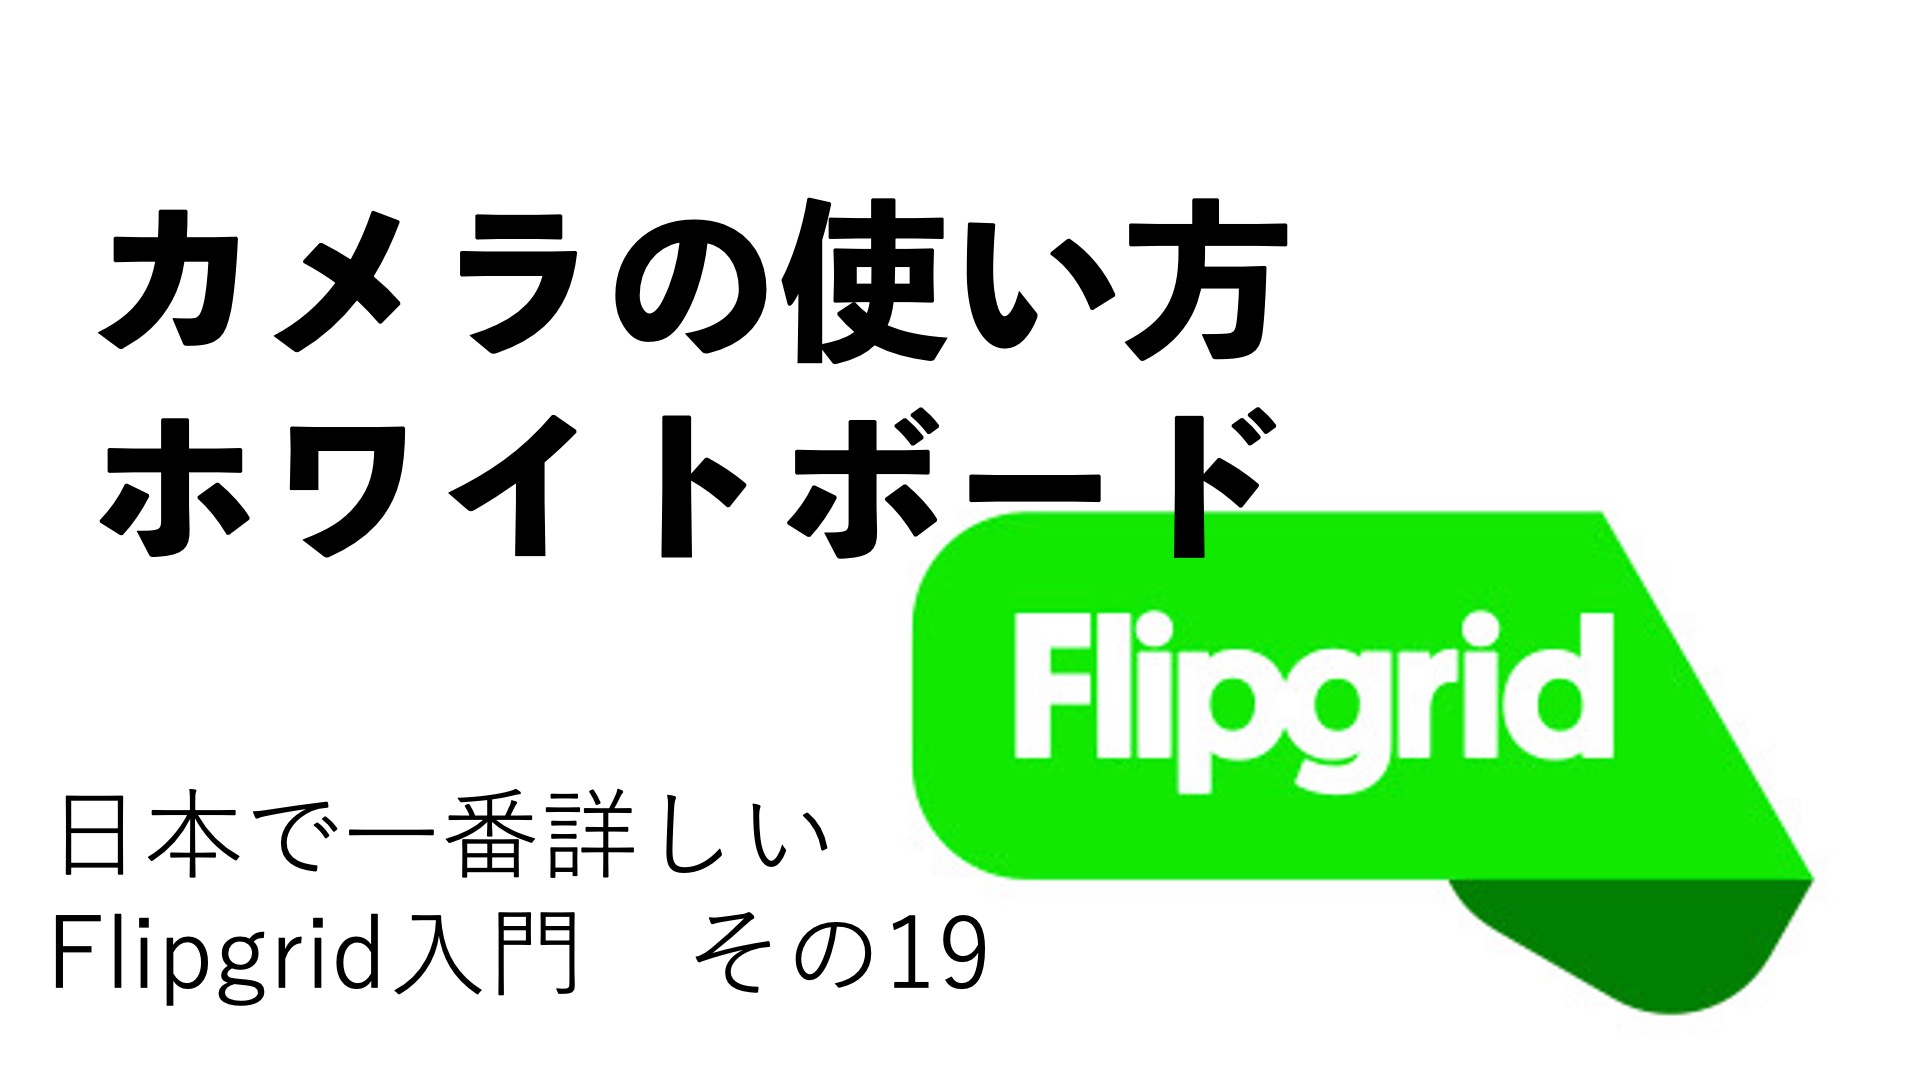 カメラの使い方 ホワイトボード 日本で一番詳しいflipgrid入門その19 Flipgridを使い倒す